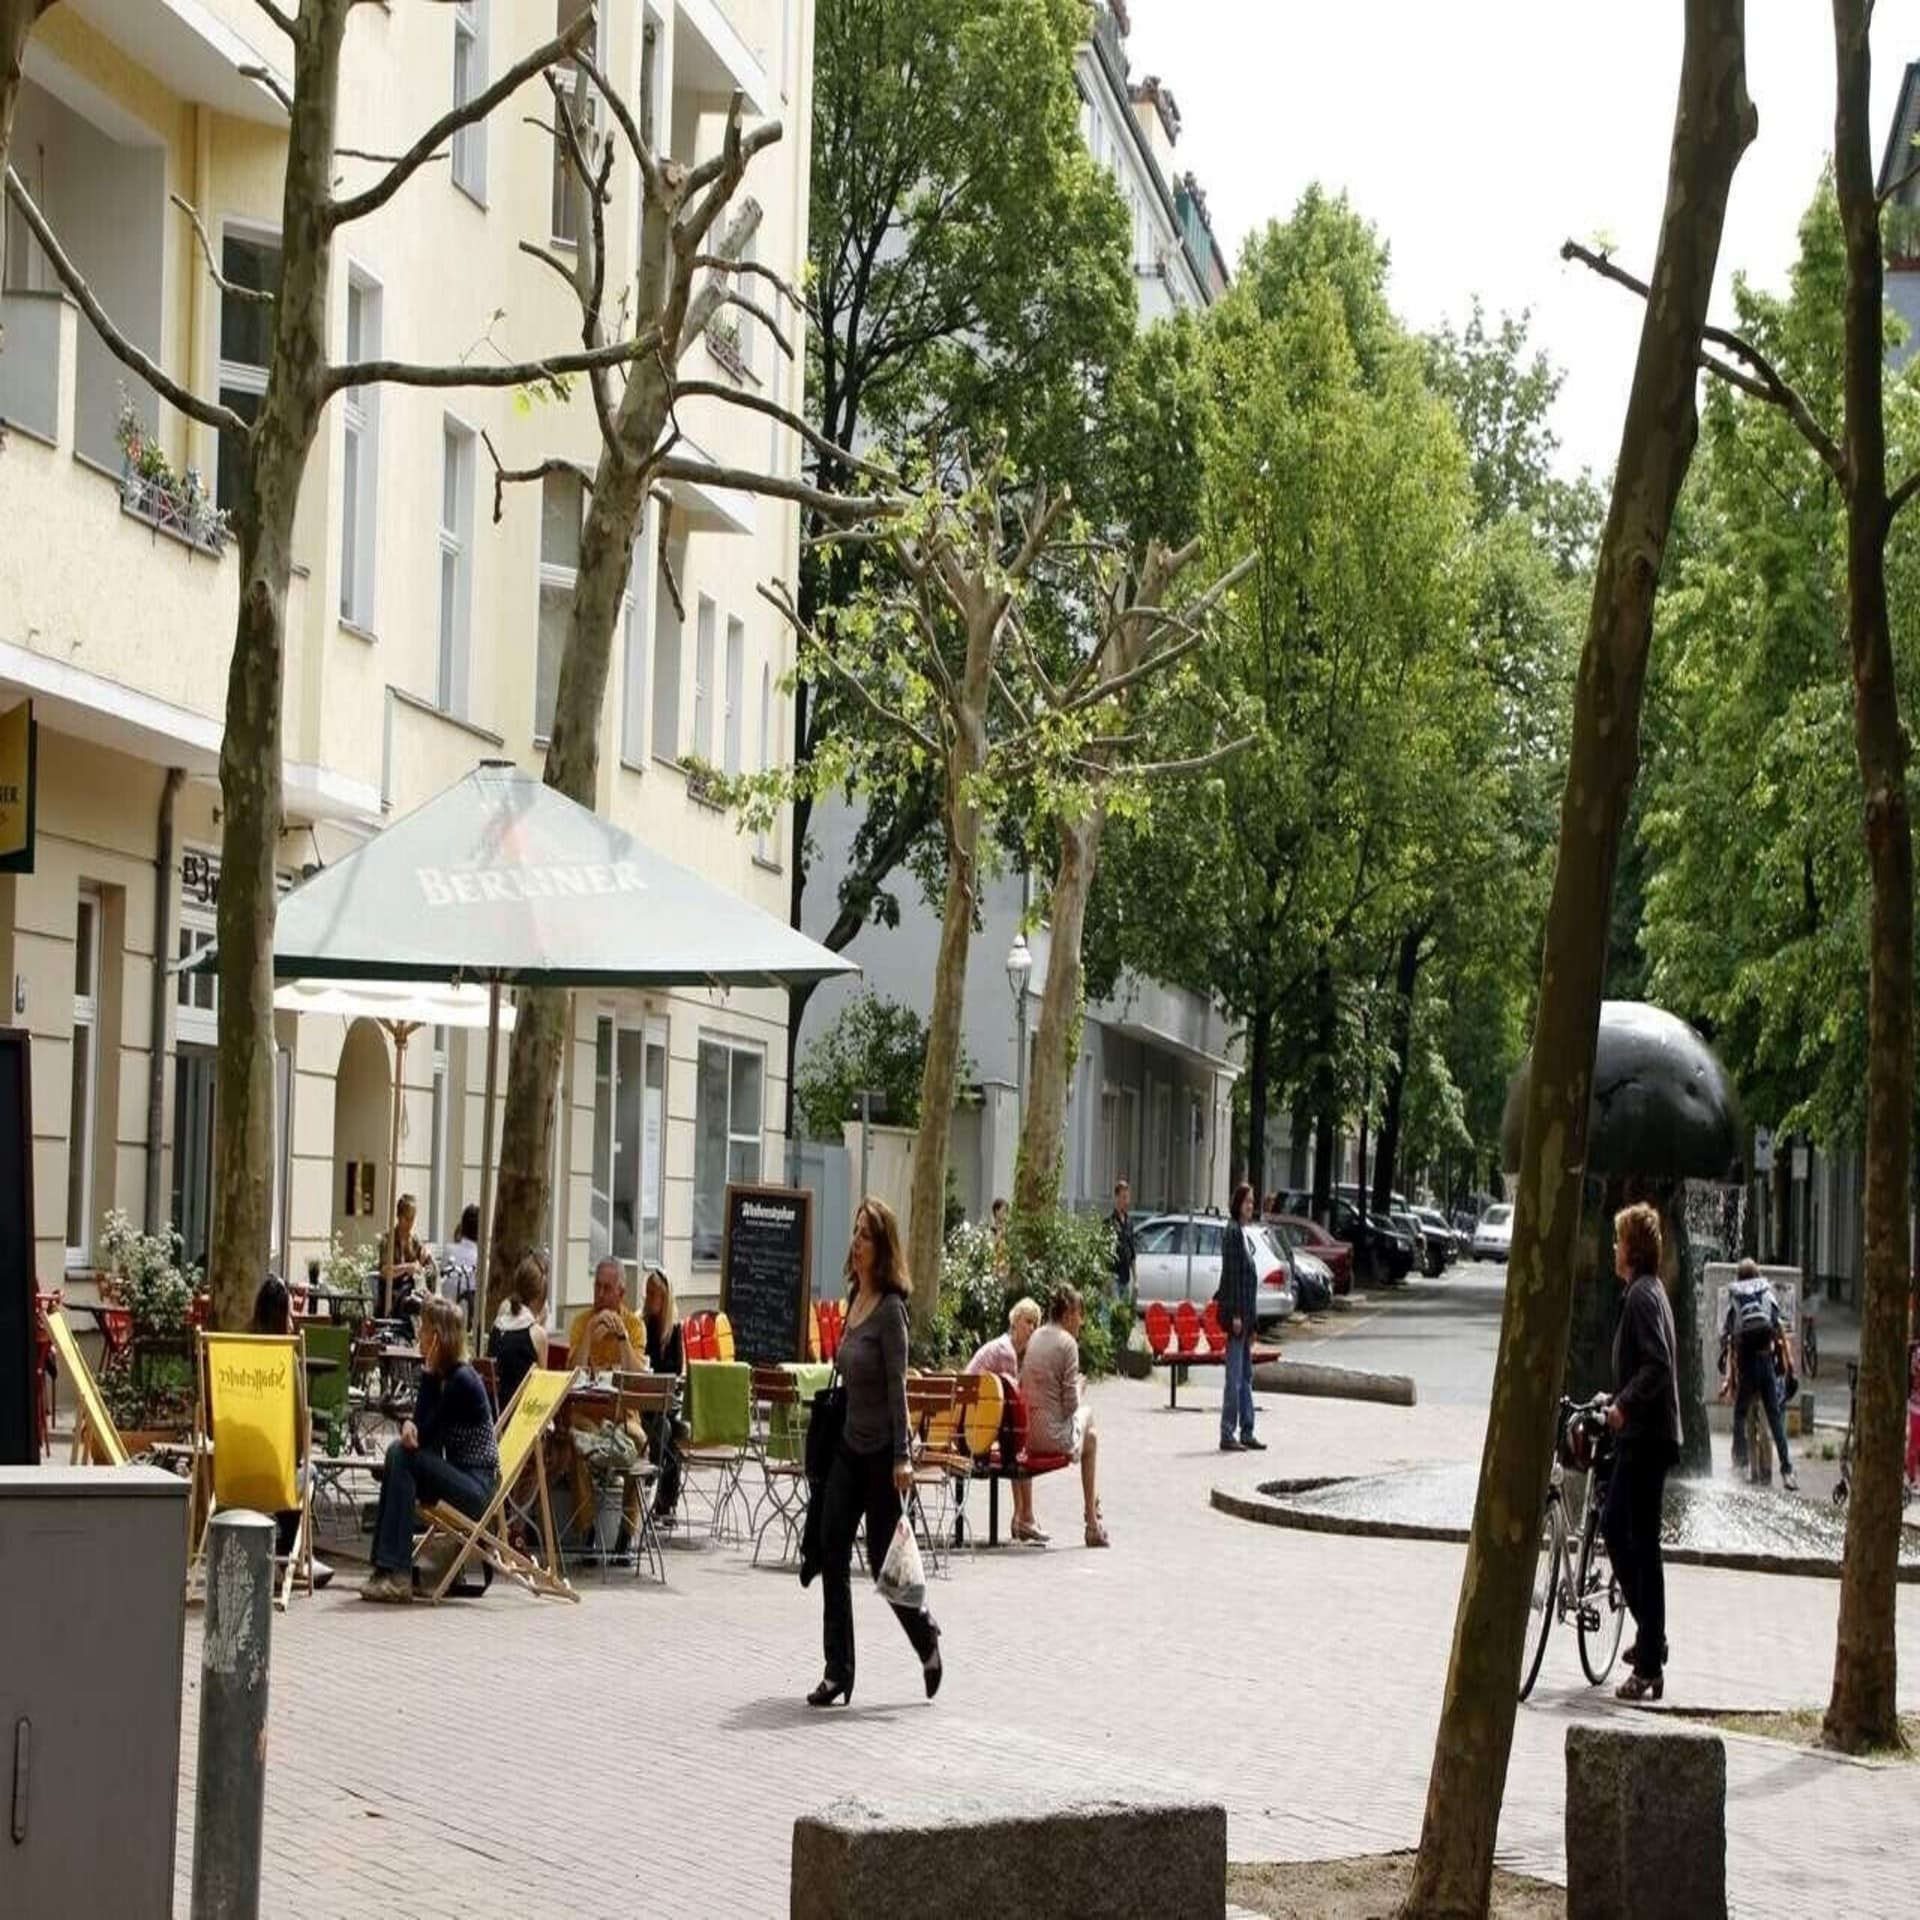 Restaurant auf einem Platz in einem Wohngebiet in Berlin. Eine Frau mit Einkaufstüten läuft vorbei.